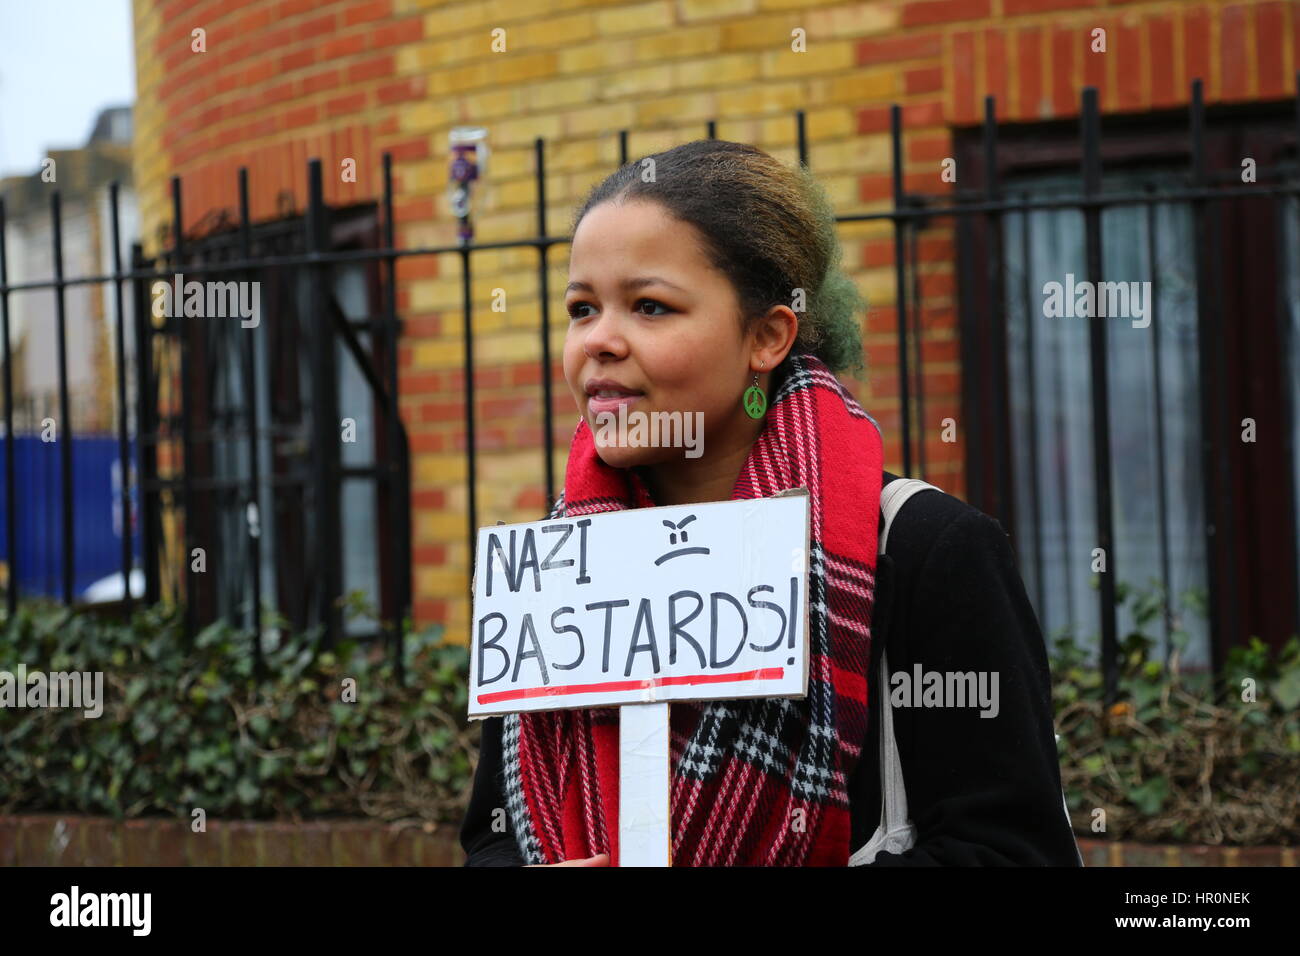 Dalston, Londra, Regno Unito. Il 25 febbraio 2017. Una donna con nazista bastardi cartellone. Una protesta al di fuori dell'LD50 Gallery organizzato da Hackney si alza per il razzismo e il fascismo e unirsi contro il fascismo. Gli artisti e gli attivisti stanno protestando per chiedere la chiusura di LD50, in Dalston, East London, dopo le accuse la galleria ha fornito una piattaforma di anti-immigrati, Islamophobic e "alt-destra" figure e promosso "odio non discorso libero". Penelope Barritt/Alamy Live News Foto Stock